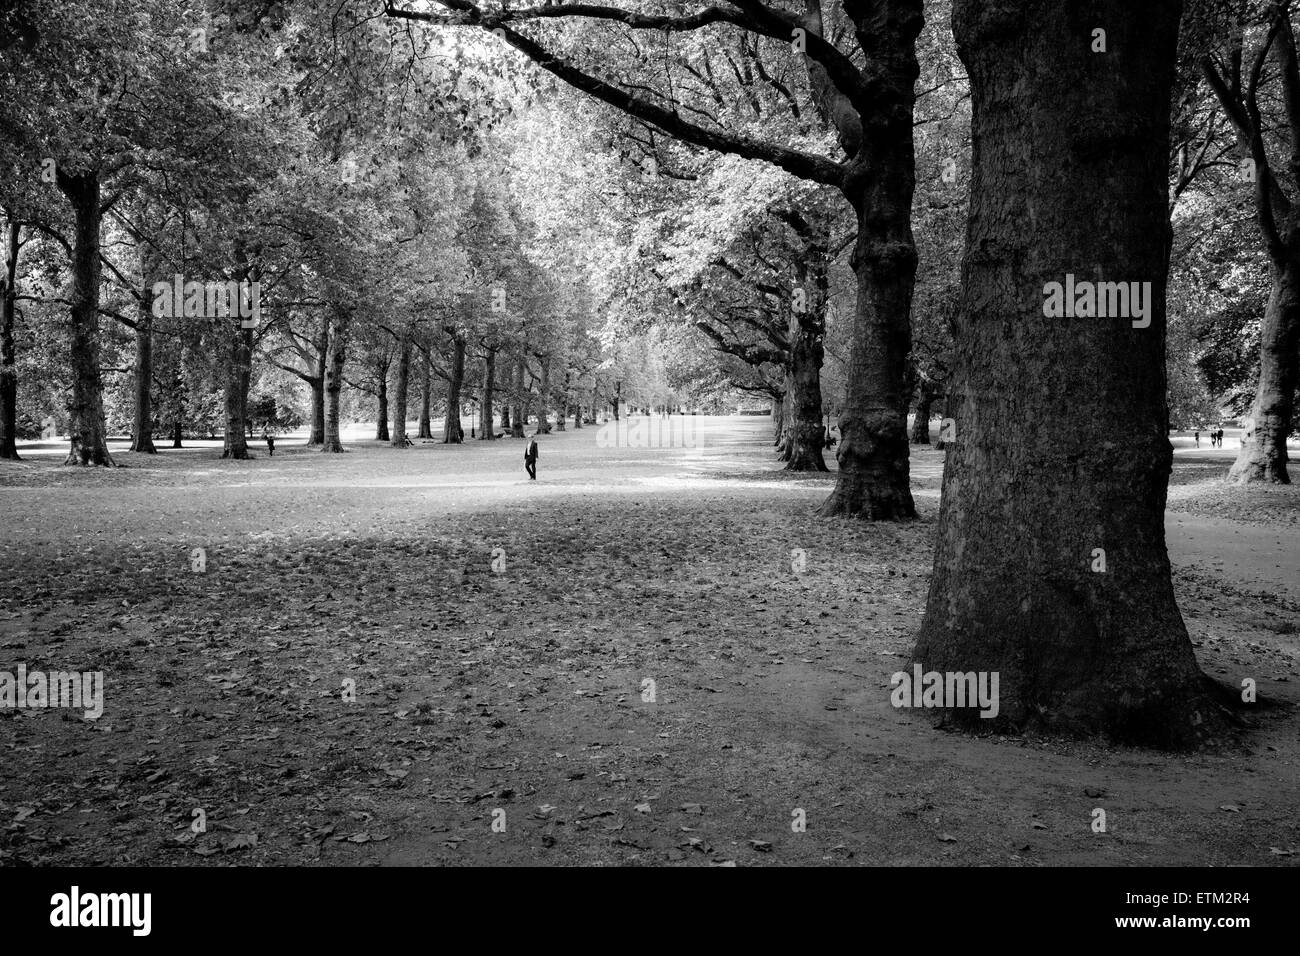 Londres, Green Park - un homme en costume de promenades à travers une rangée d'arbres avec la lumière du soleil filtrant à travers les feuilles. Noir et blanc. Banque D'Images